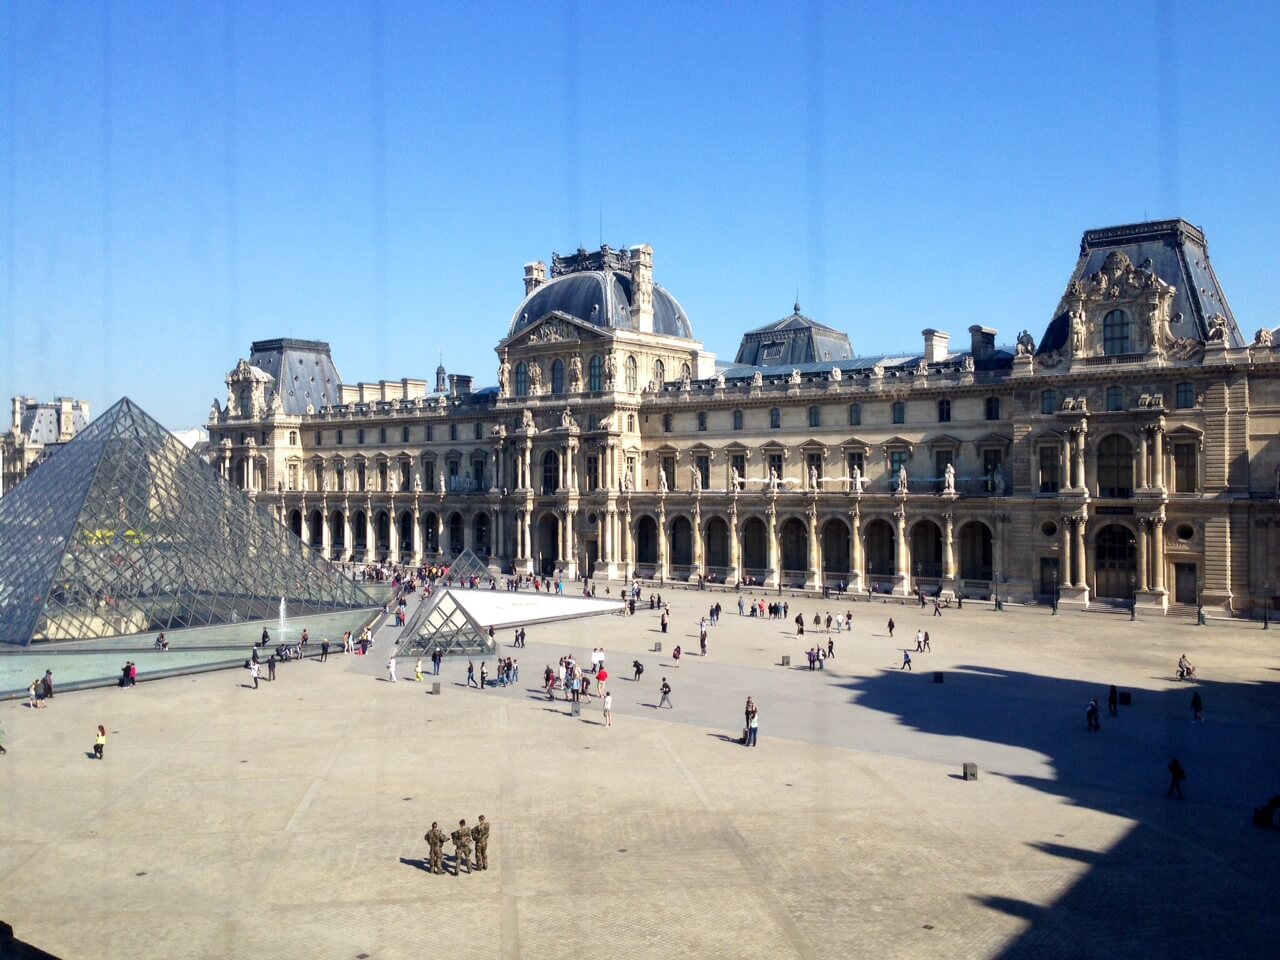 Visiting Le Louvre in Paris